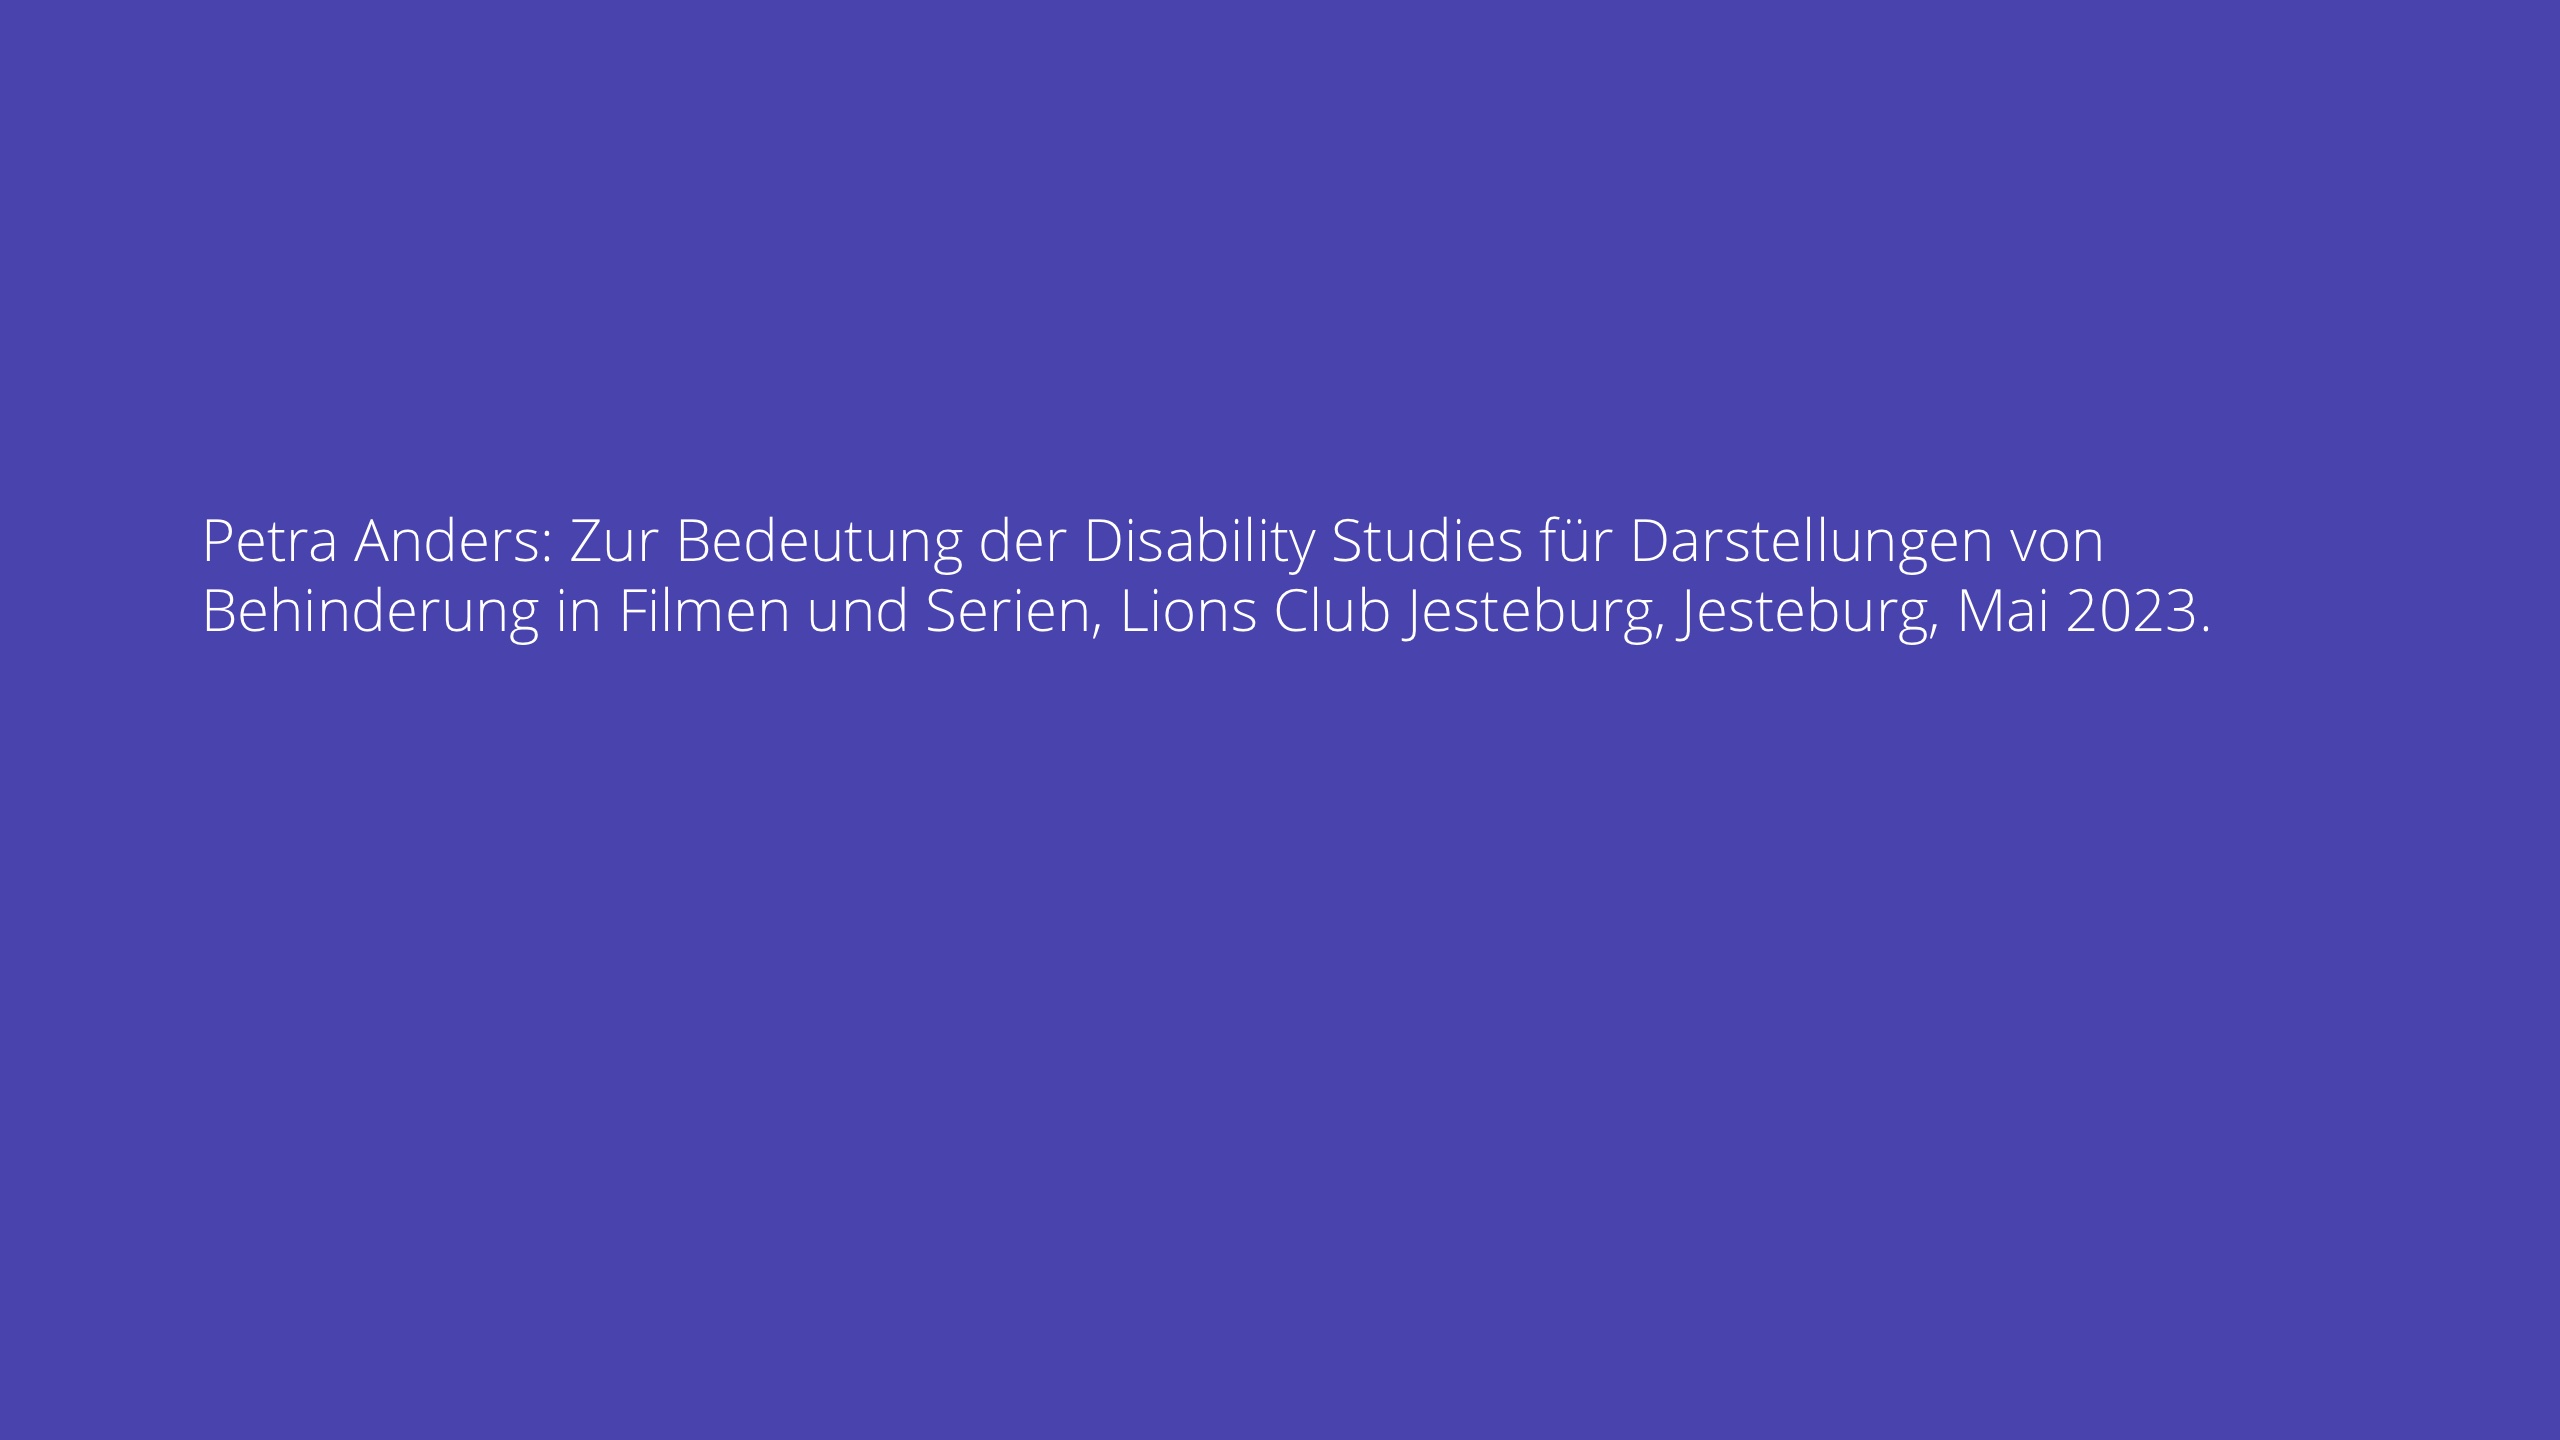 Petra Anders: Zur Bedeutung der Disability Studies für Darstellungen von Behinderung in Filmen und Serien, Lions Club Jesteburg, Jesteburg, Mai 2023.